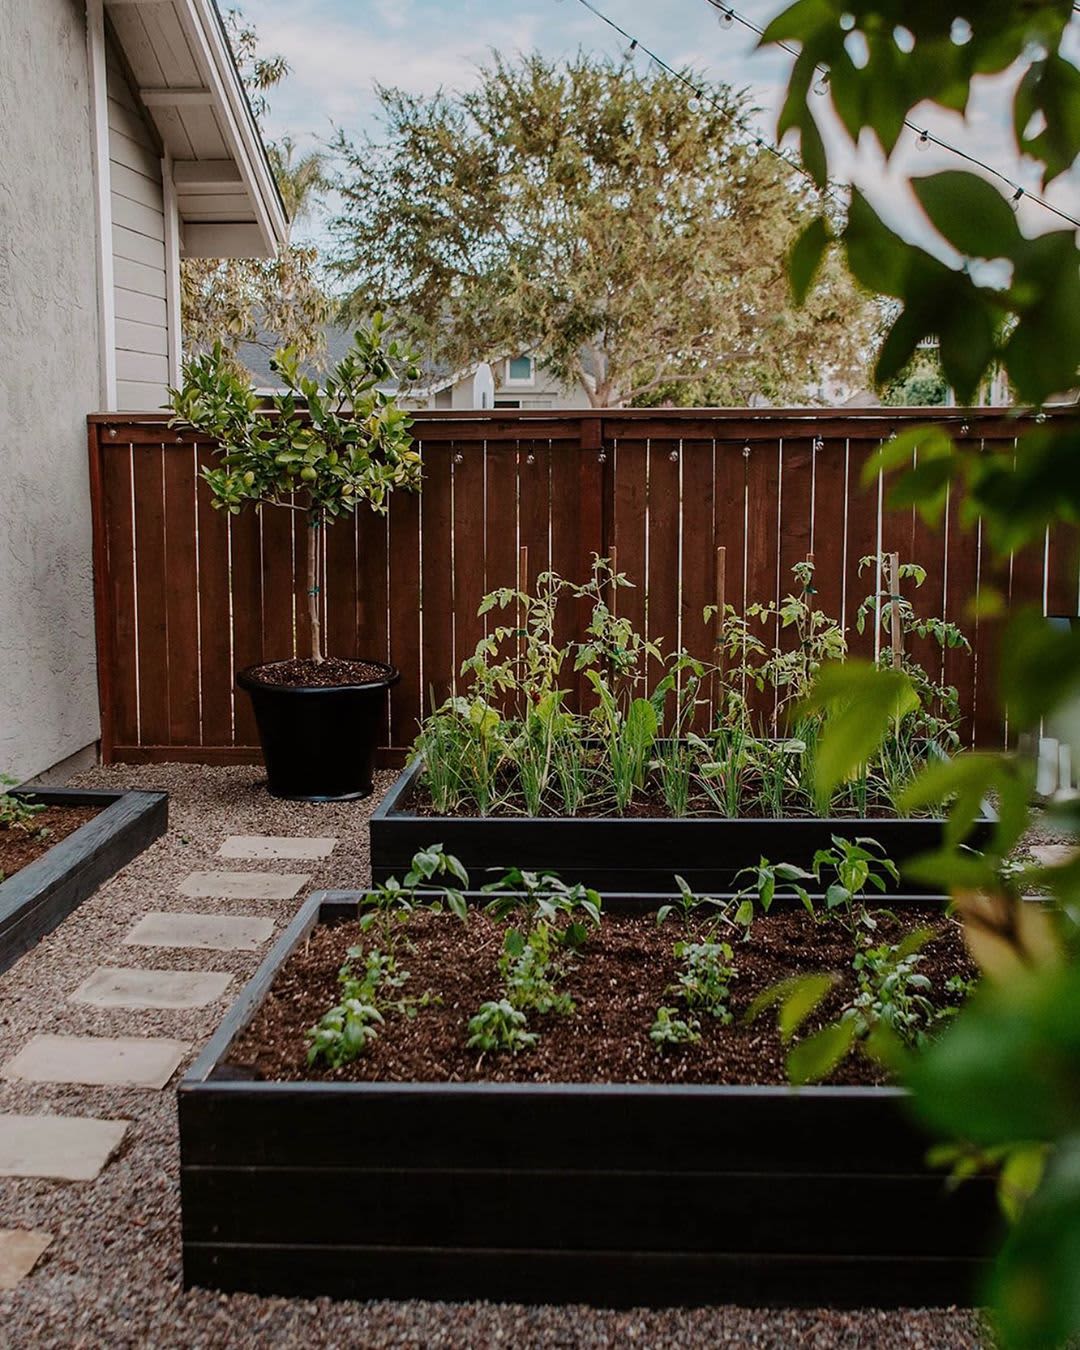 18 Patio Garden Ideas With Photos of Lovely Gardens   Apartment ...